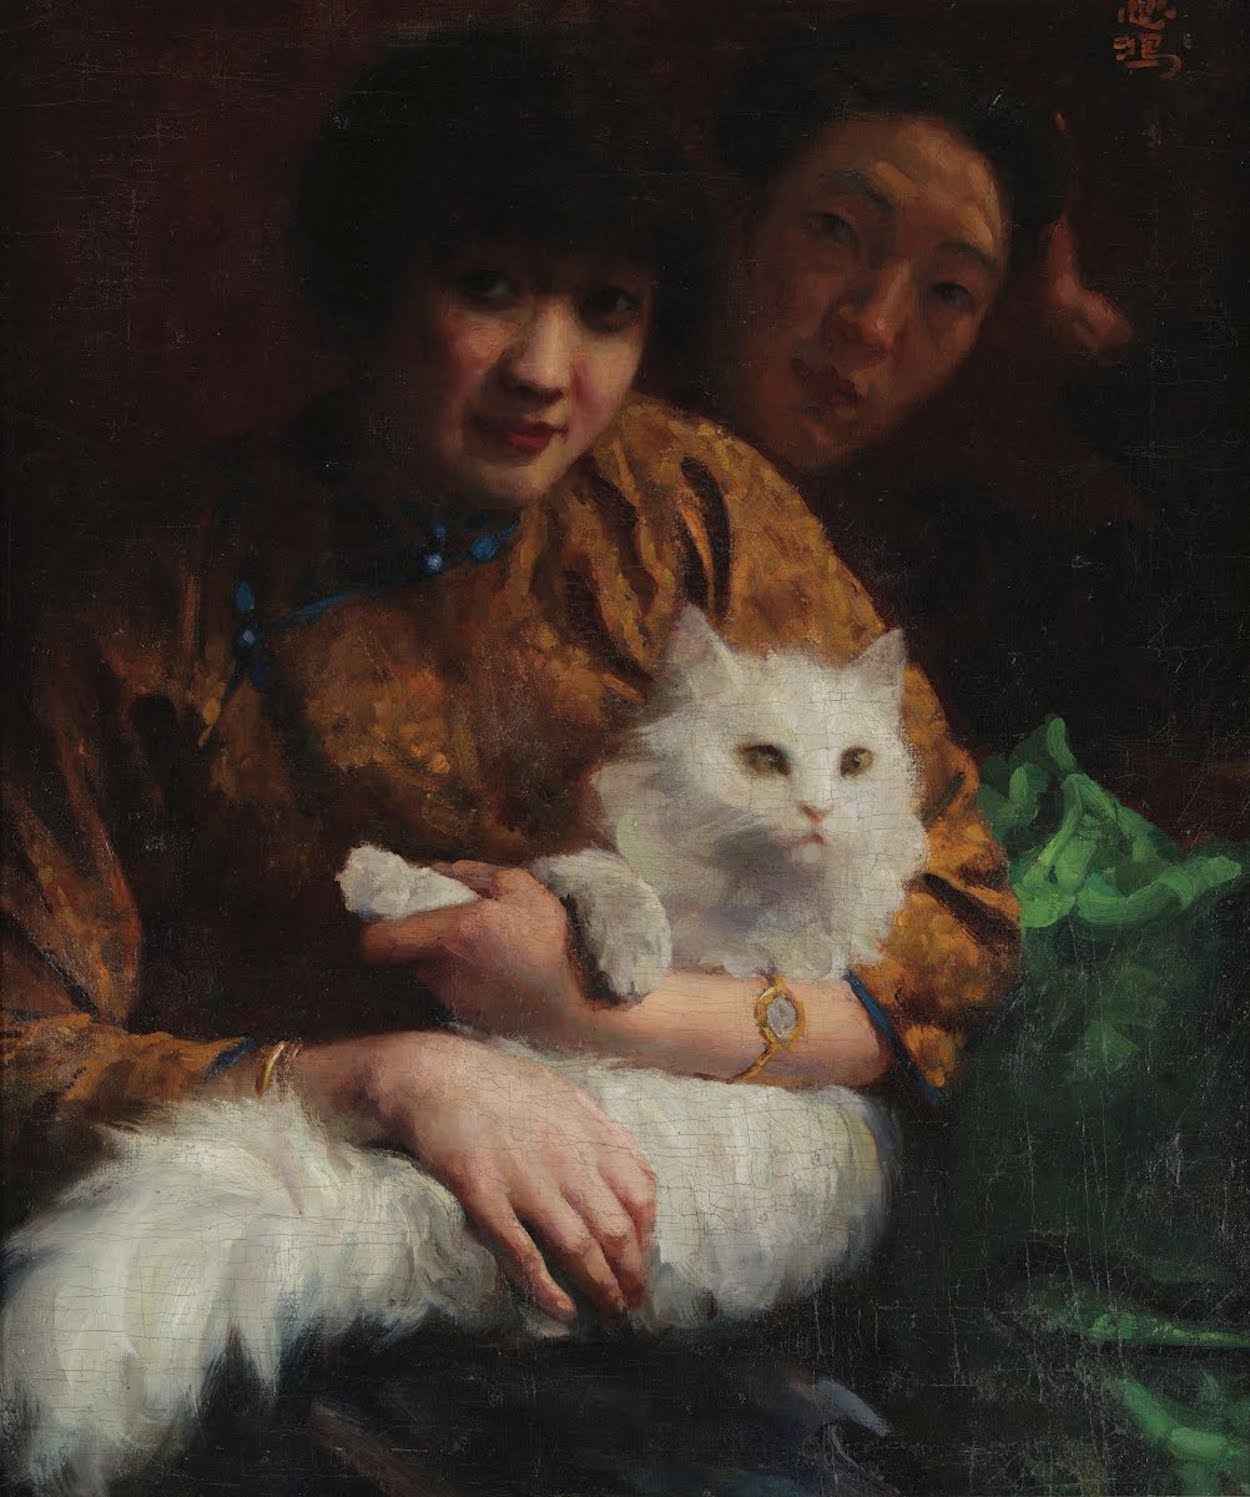 Stroking the Cat by Xu Beihong - 1924 - 65 x 53 cm CAFA Art Museum